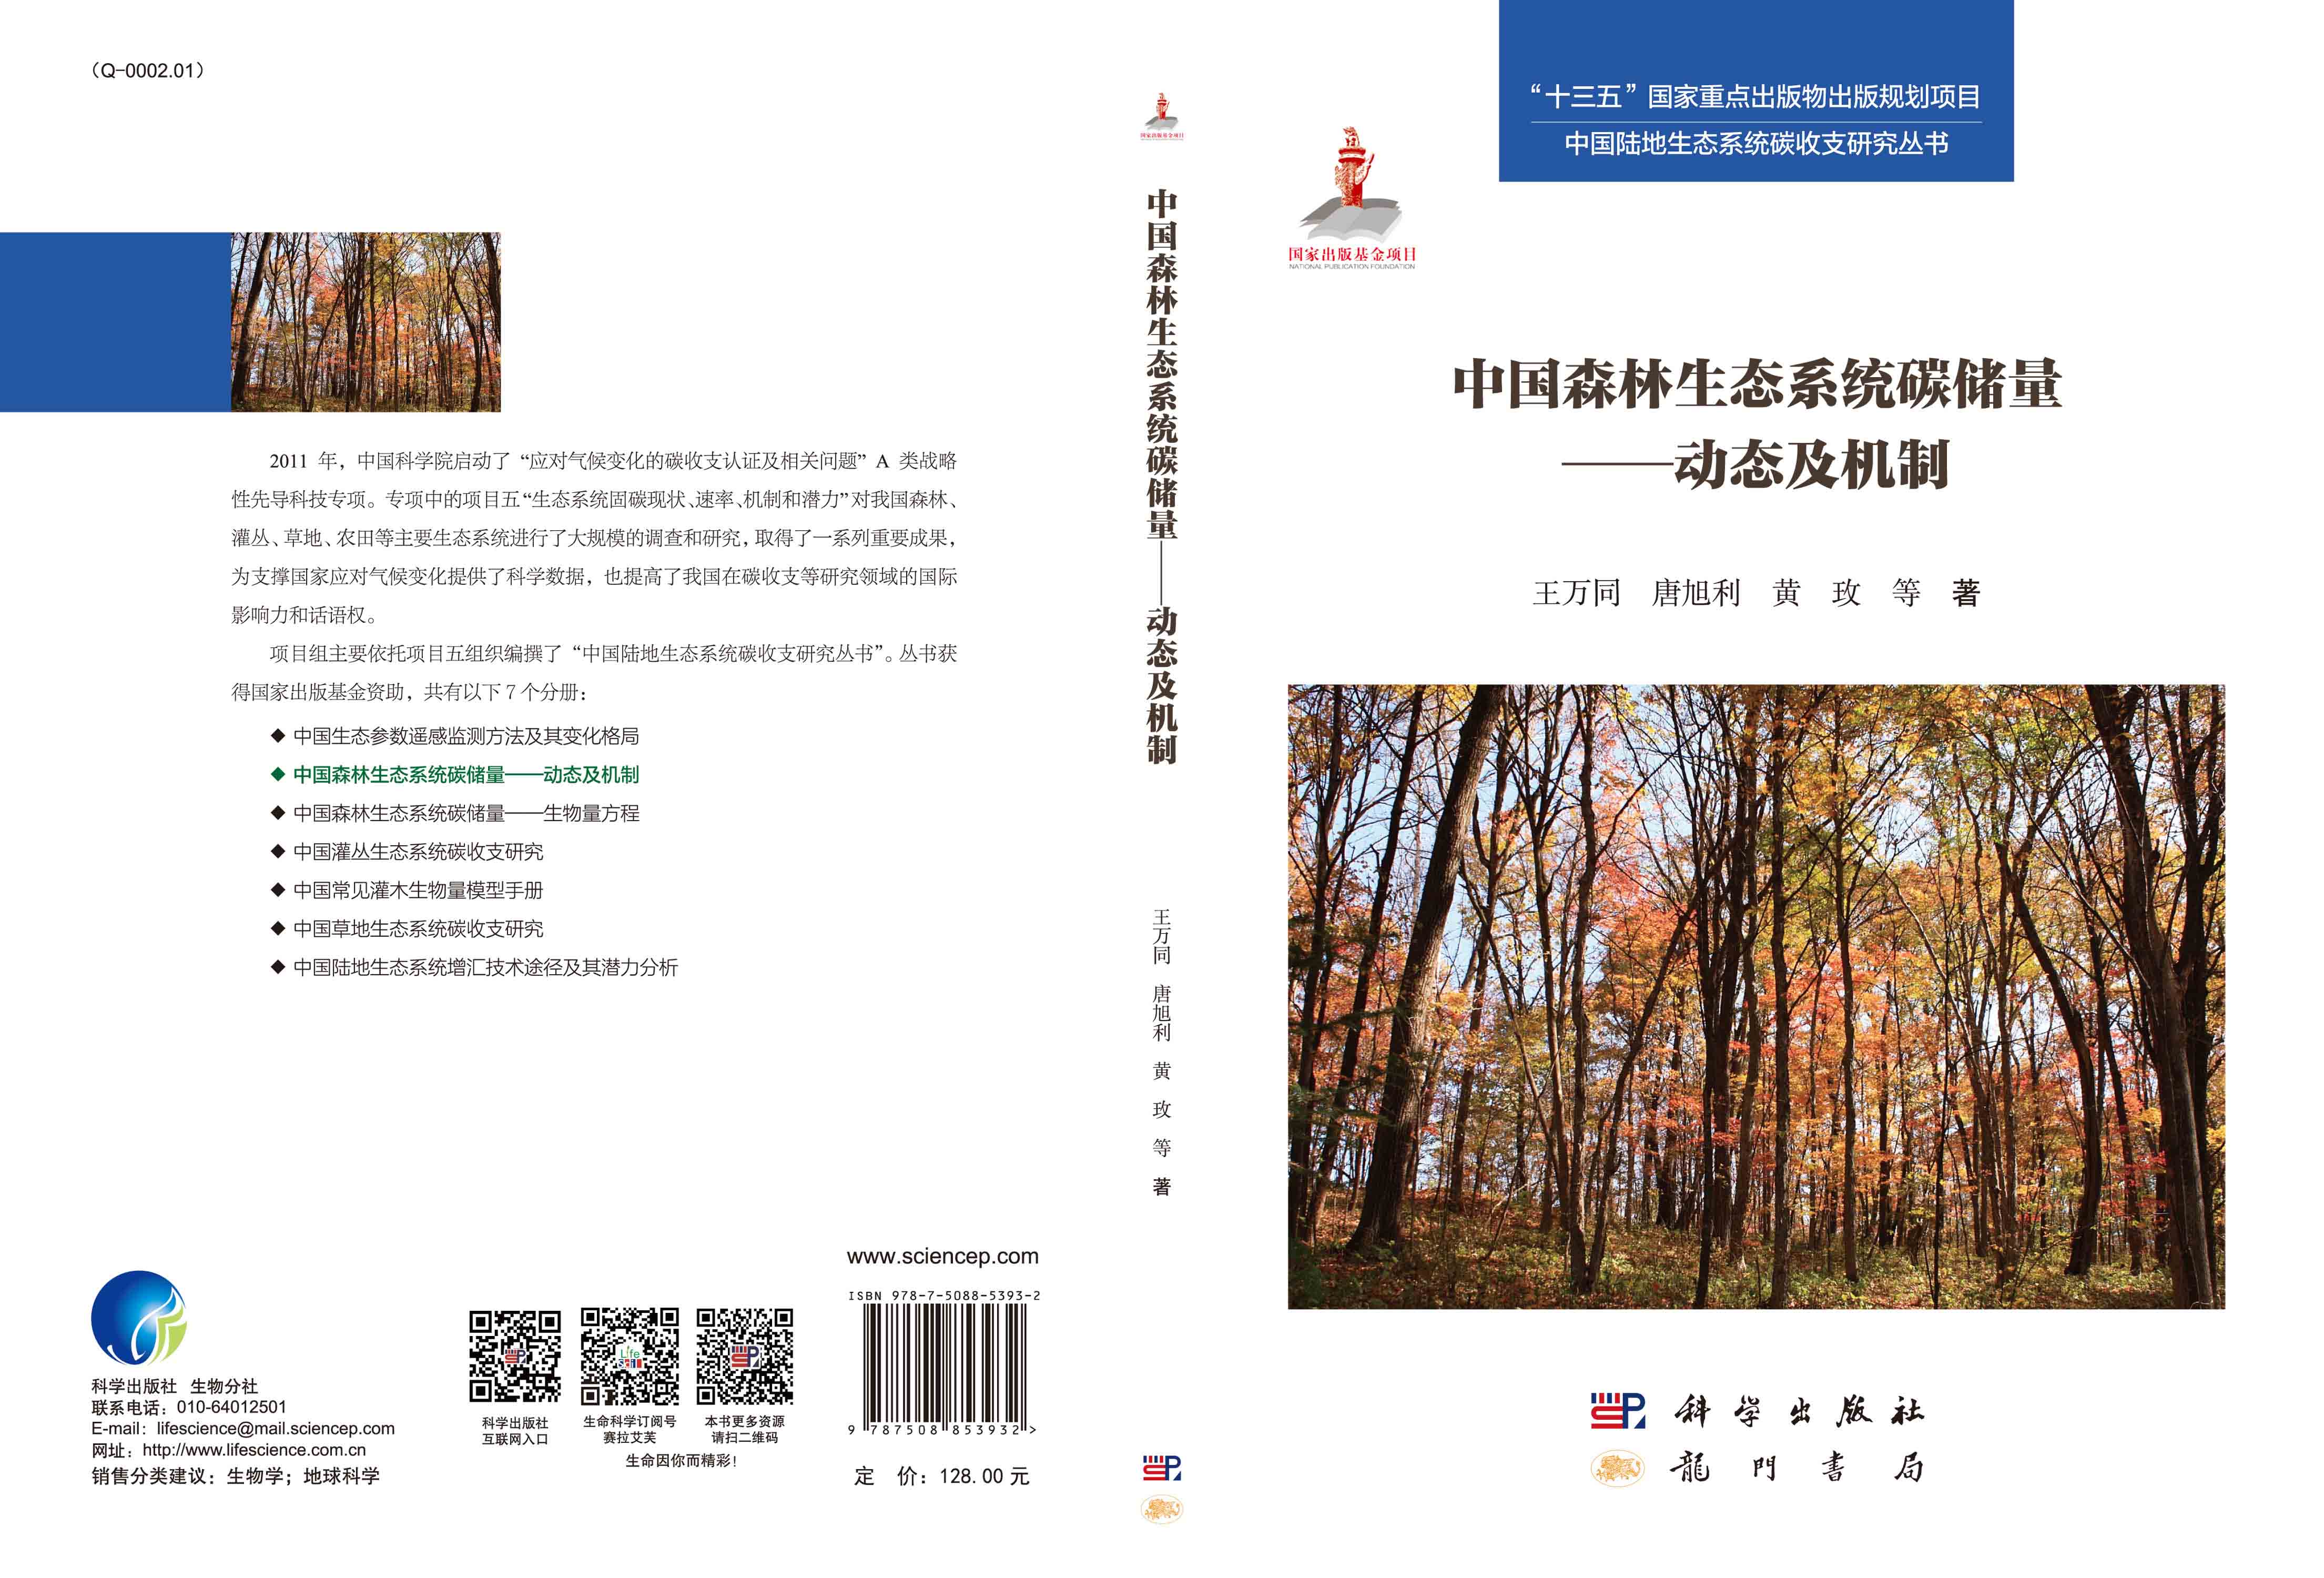 中国森林生态系统碳储量——动态及机制